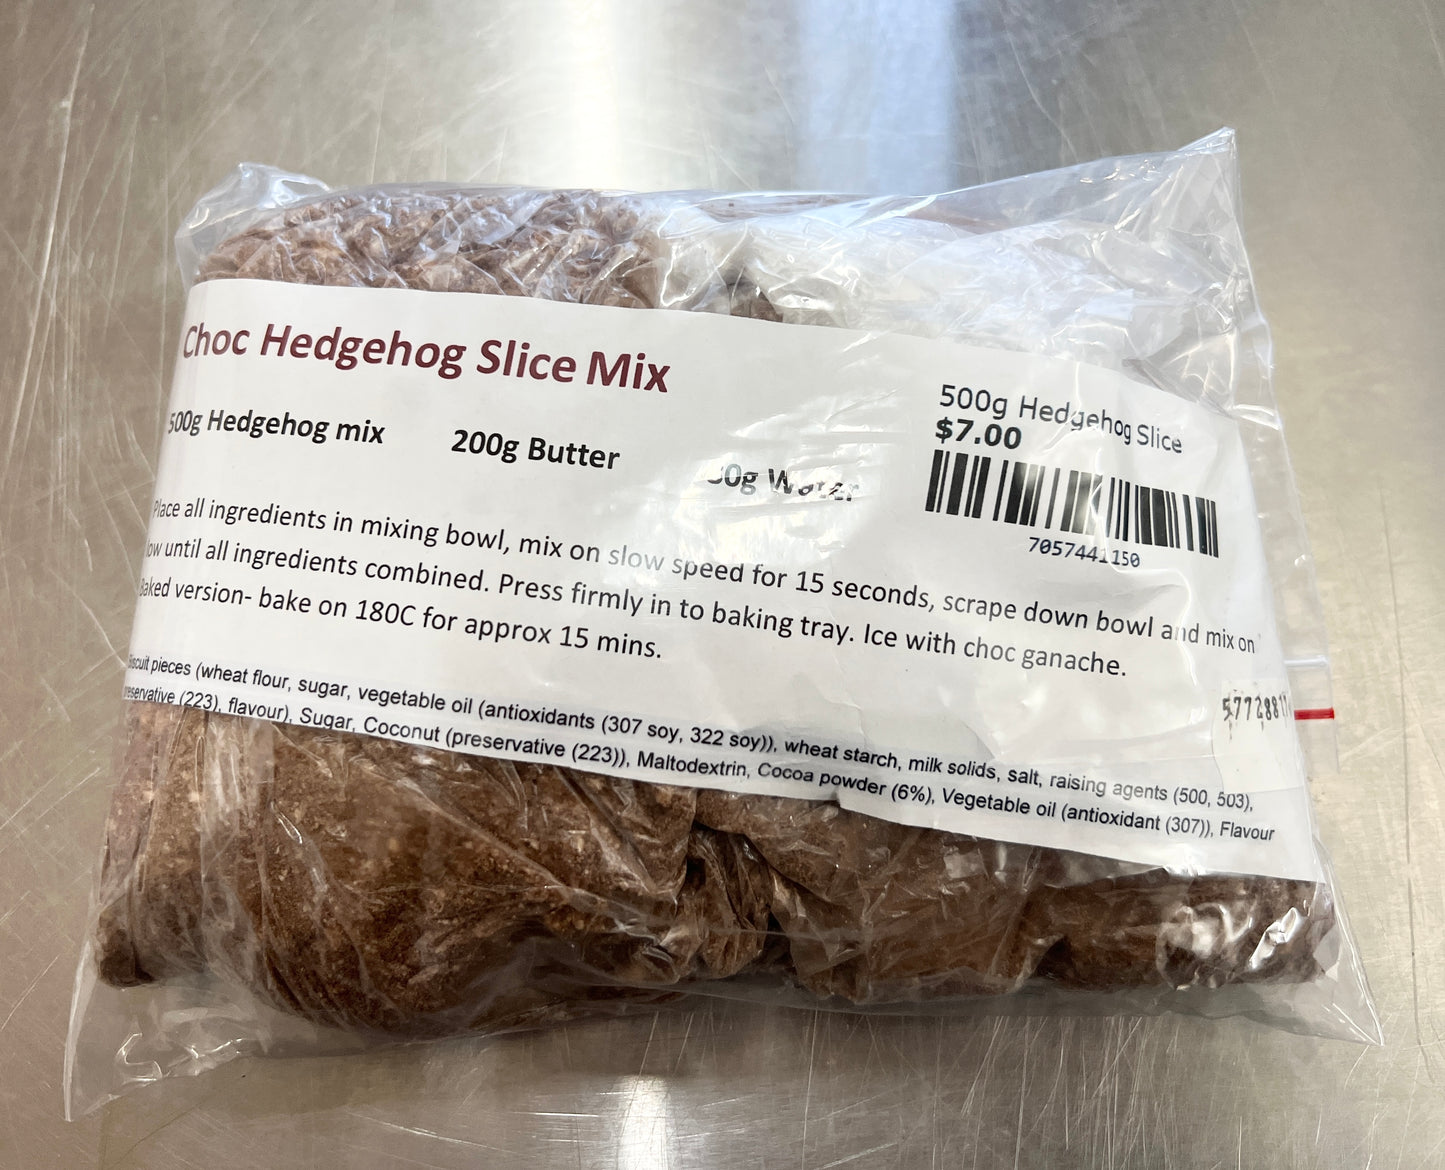 500g Hedgehog Slice Mixes Other